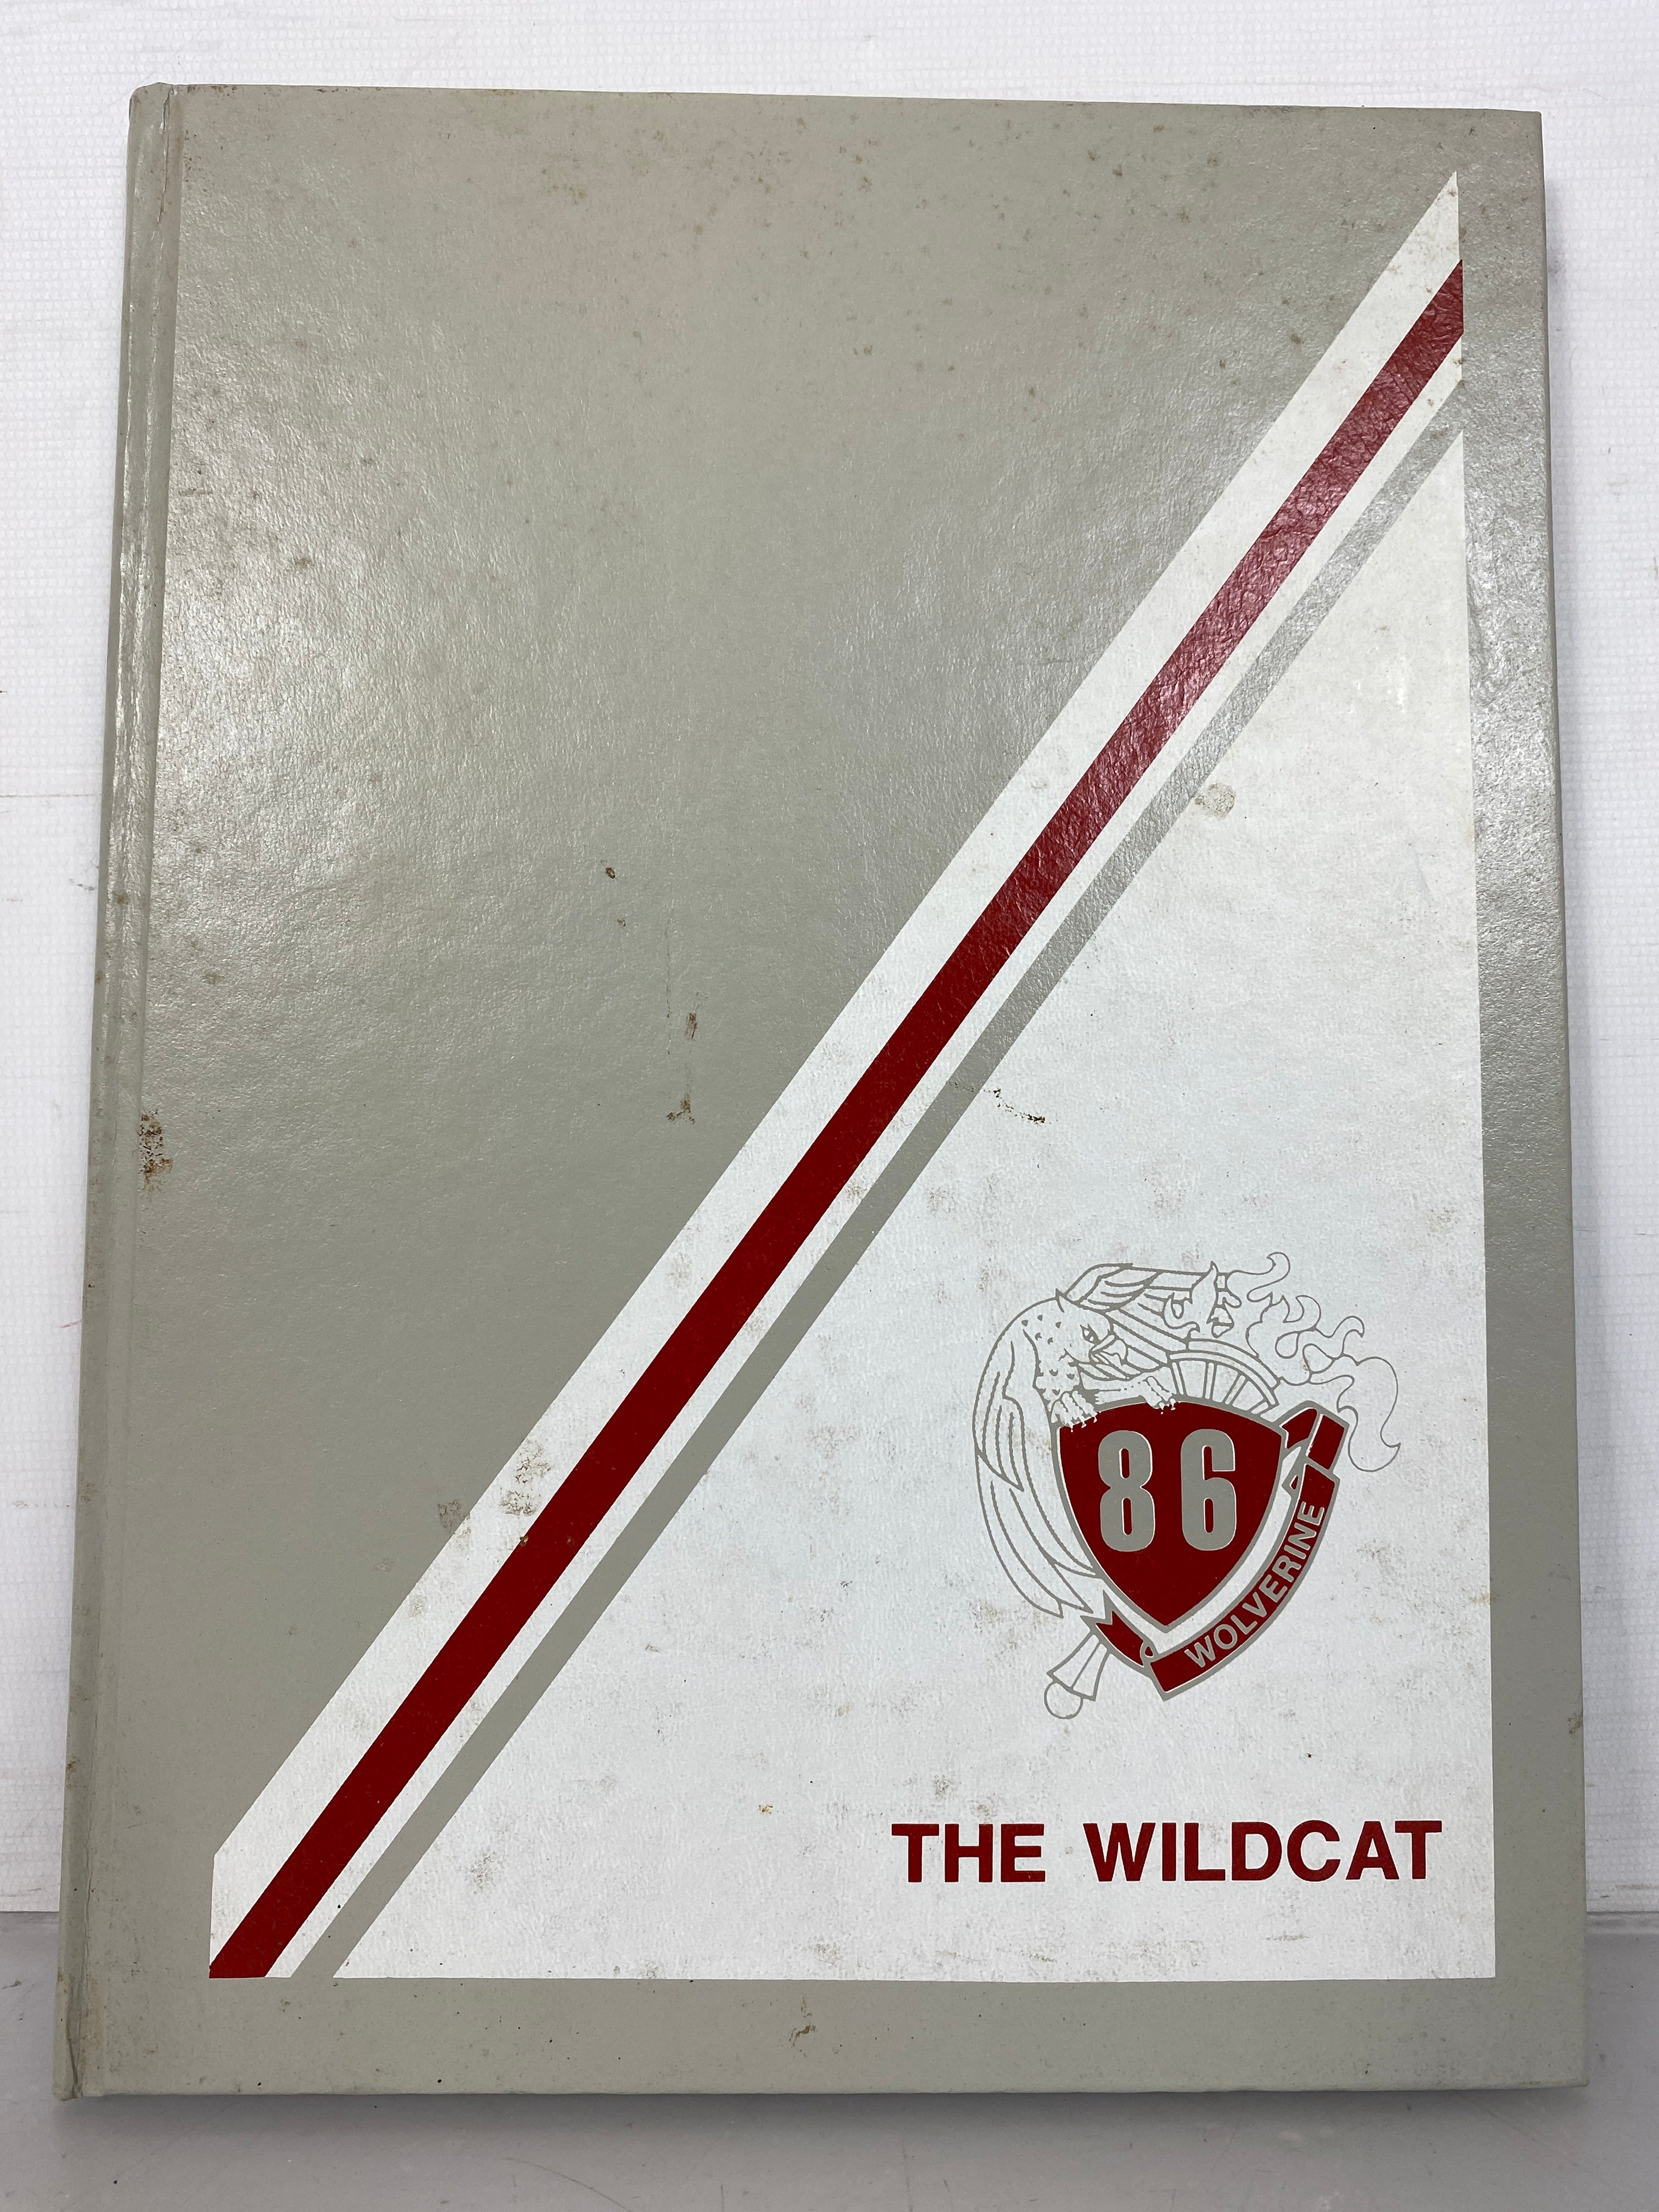 1986 Wolverine Community School Yearbook Wolverine Michigan Wildcat